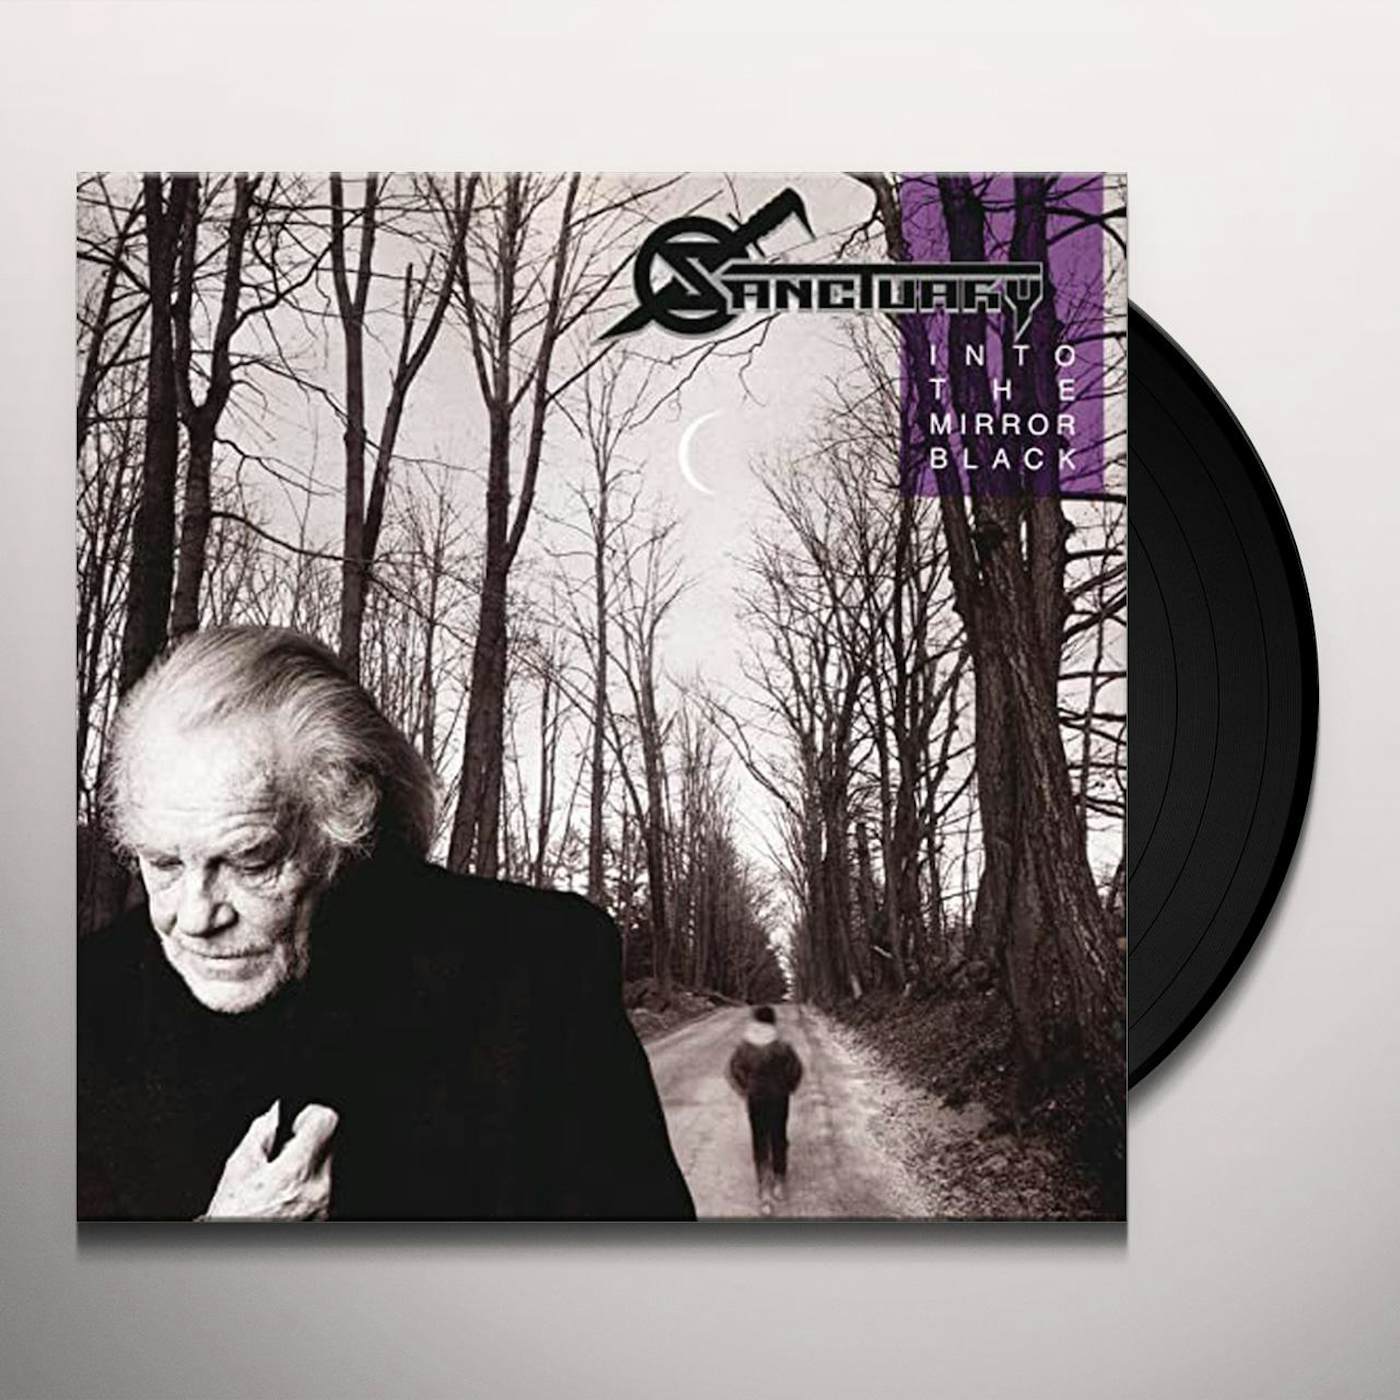 Sanctuary INTO THE MIRROR BLACK (30TH ANNIVERSARY EDITION) Vinyl Record